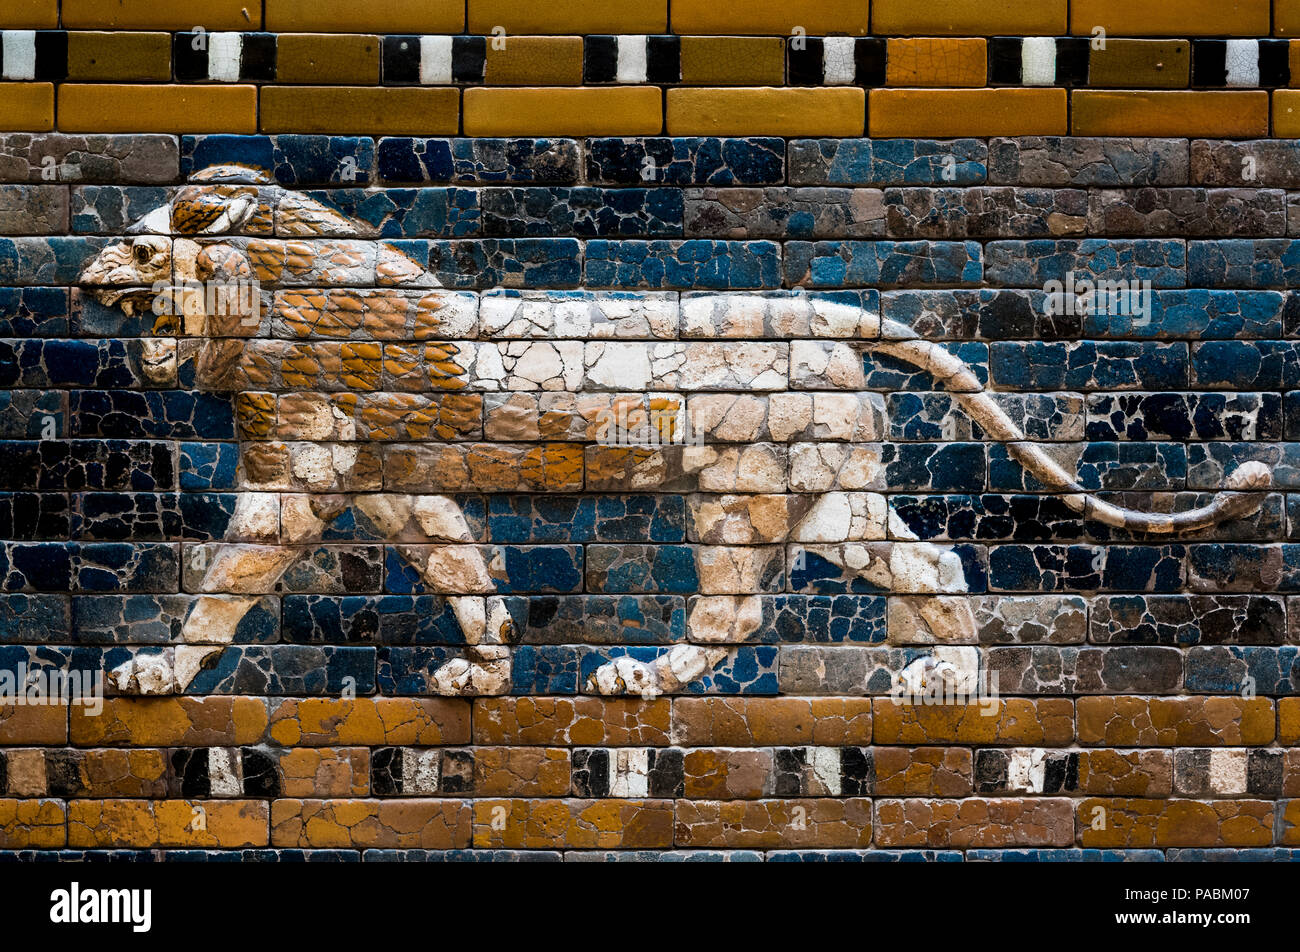 La porte d'Ishtar de Babylone Nabuchodonosor ll (6e C) MUSÉE PERGAMON MUSEUM ISLAND BERLIN ALLEMAGNE Banque D'Images